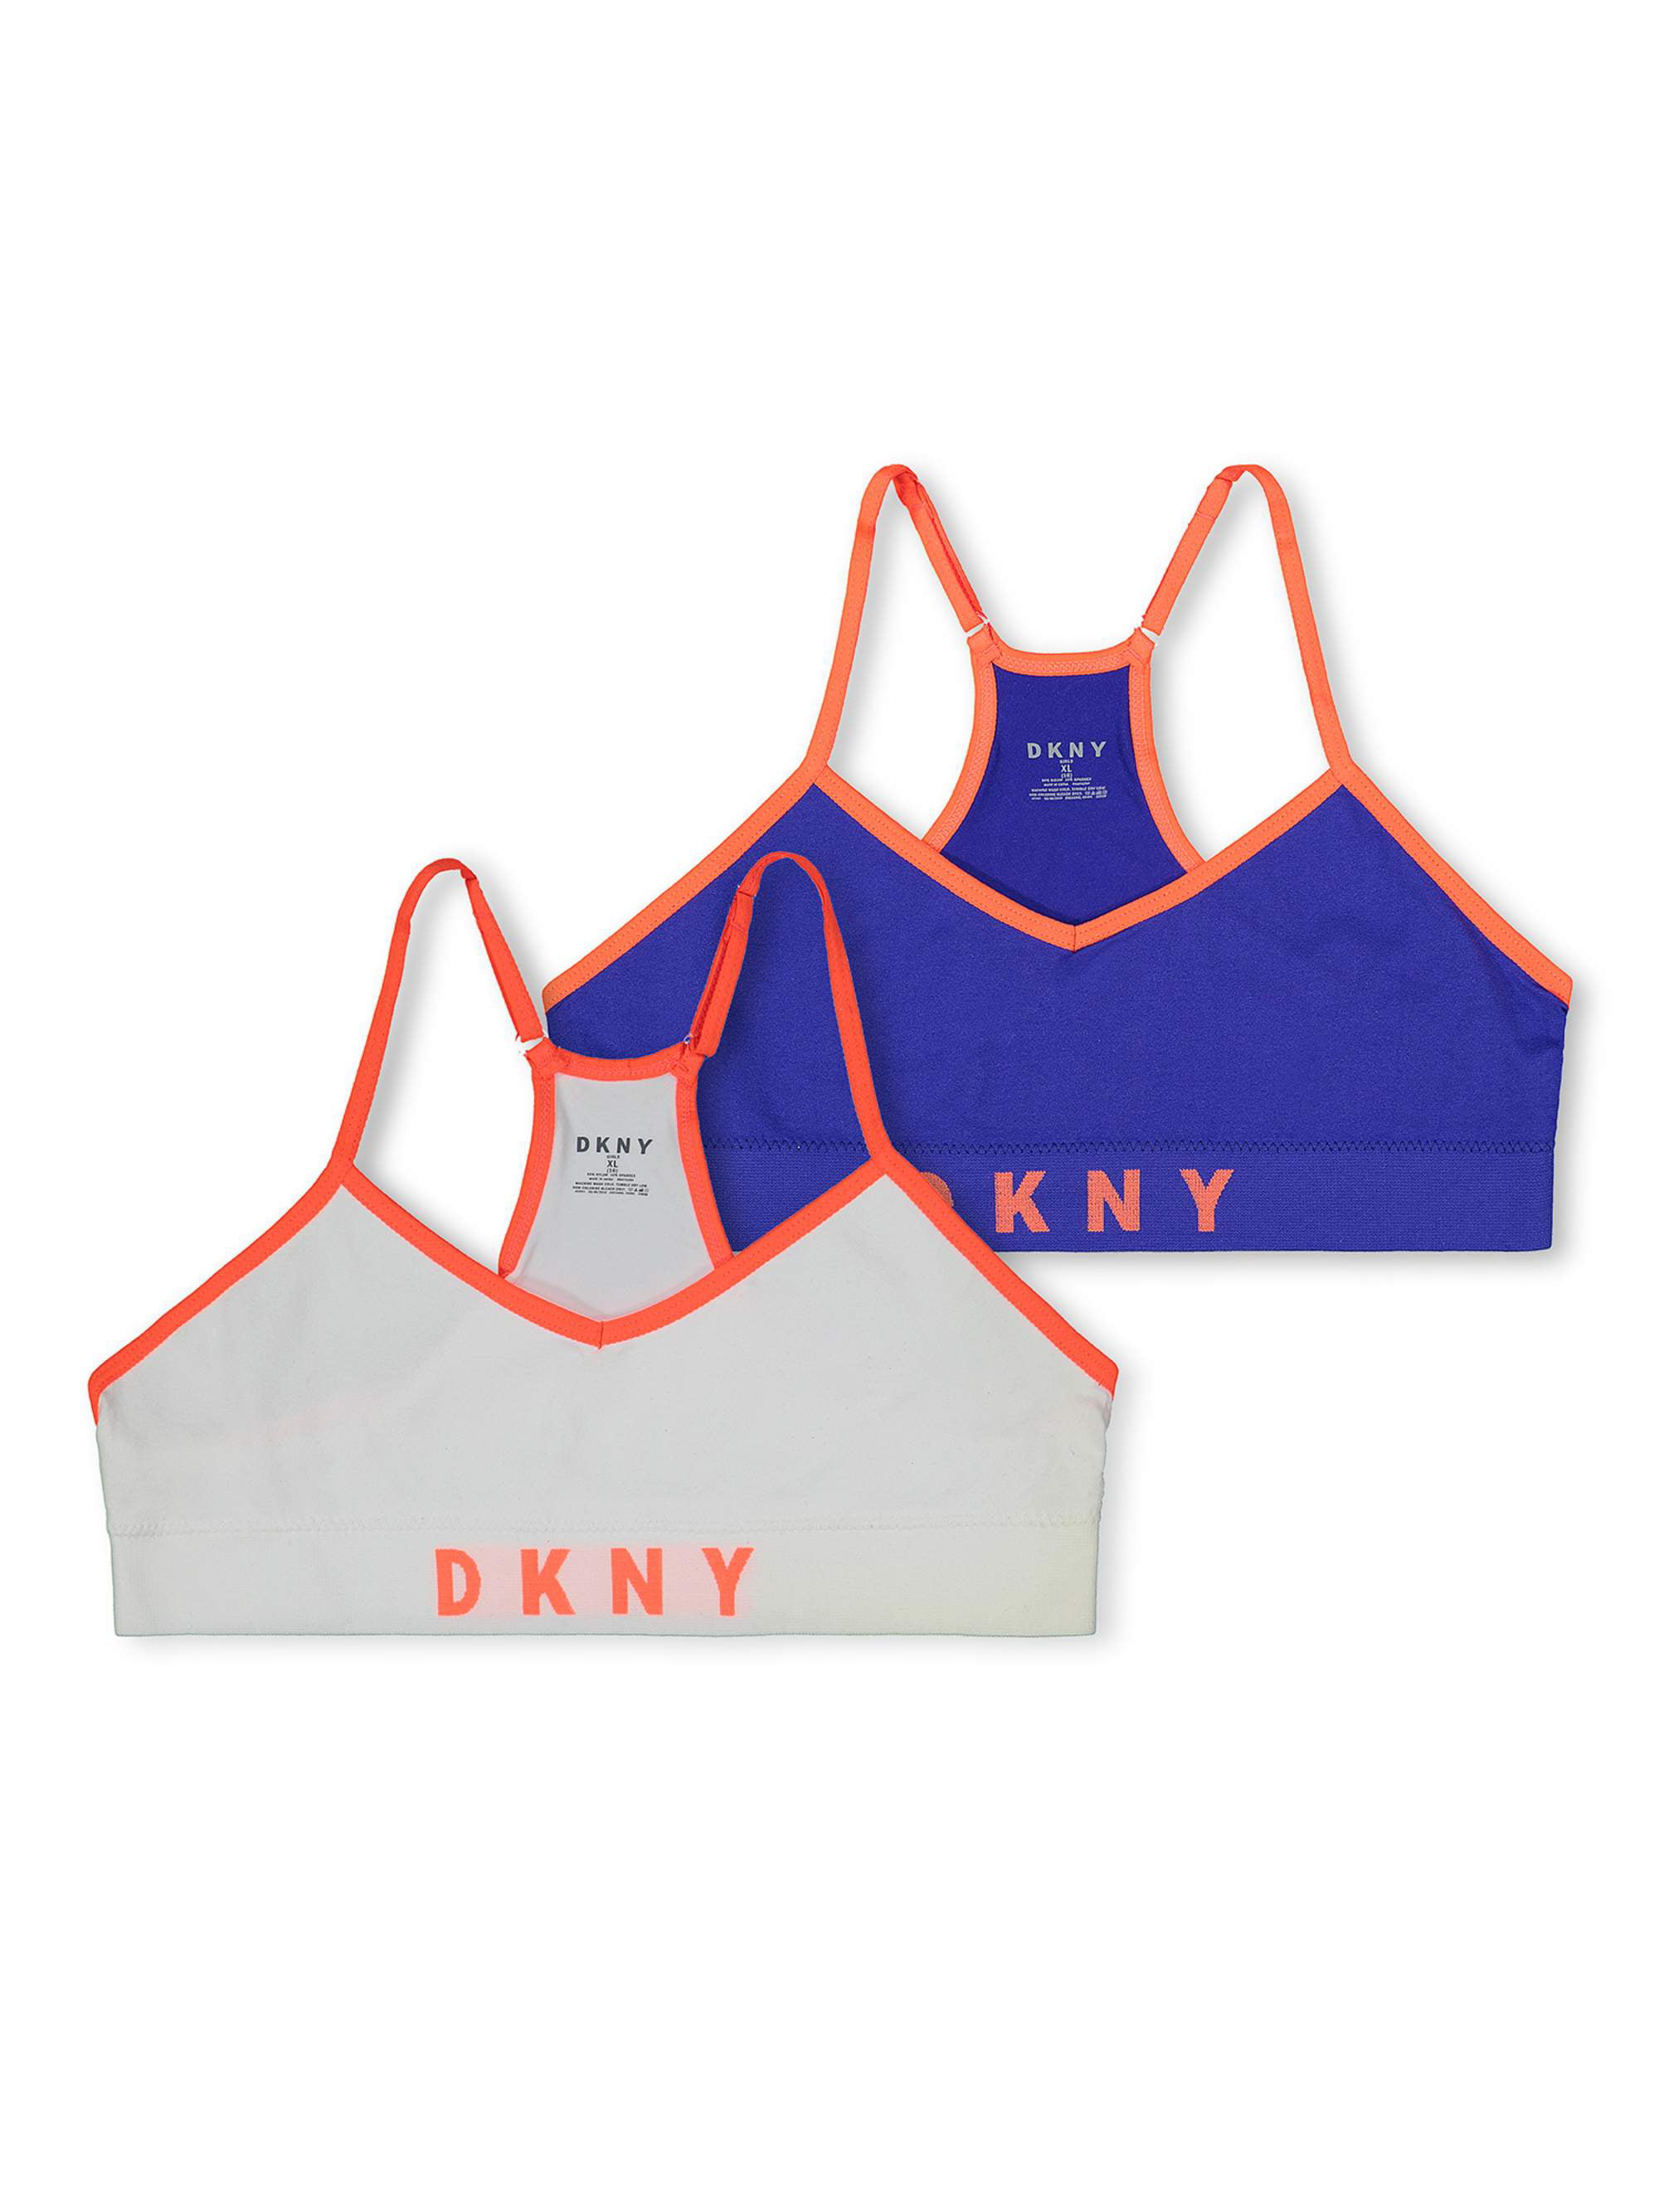 DKNY Girls Seamless Bralette 2-Pack, Sizes 30-36 